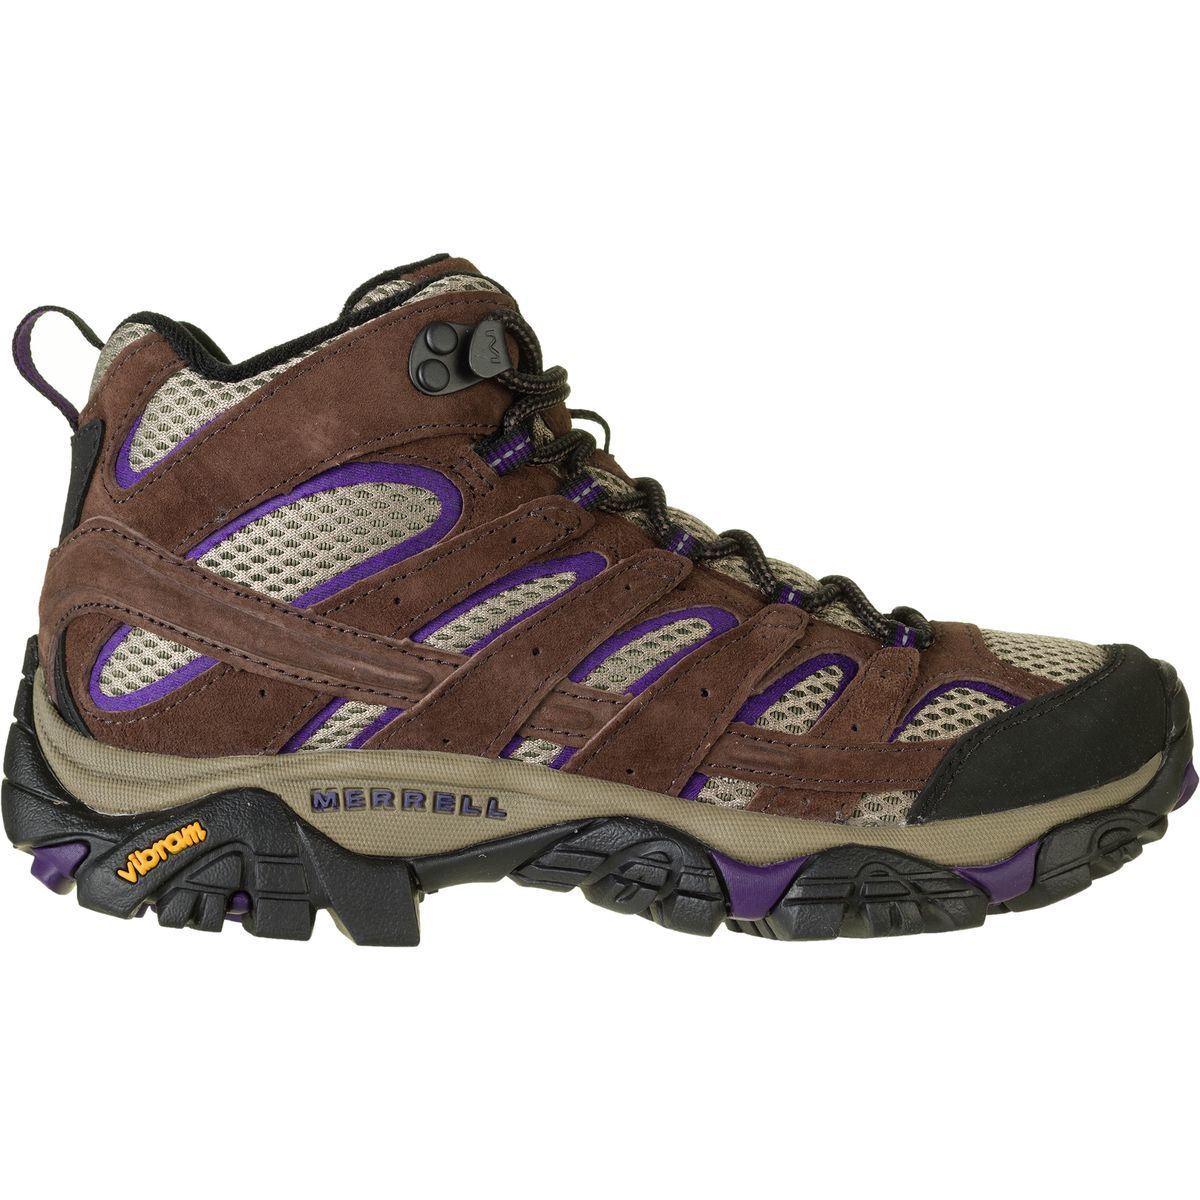 Merrell Moab 2 Boot - Women's - Footwear